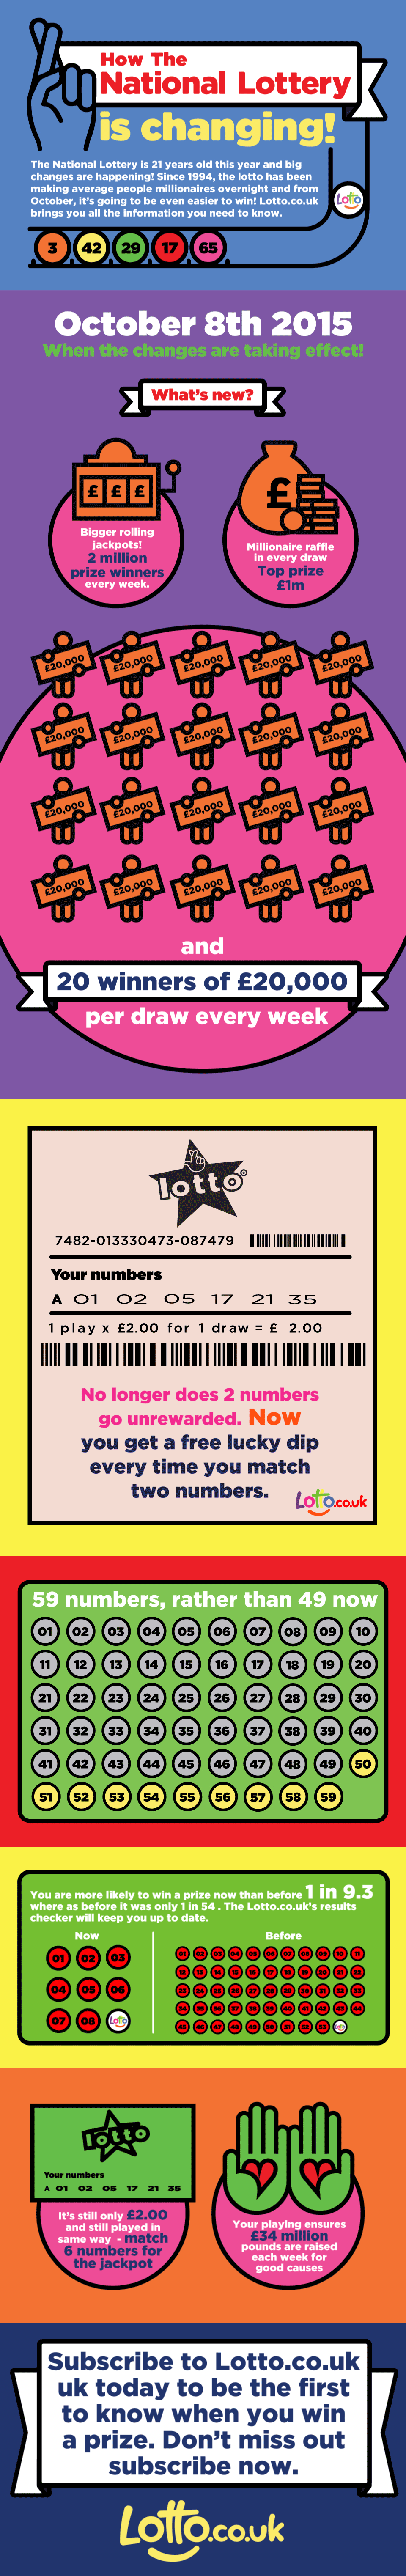 Infographic Hoe de Nationale Lottery verandert